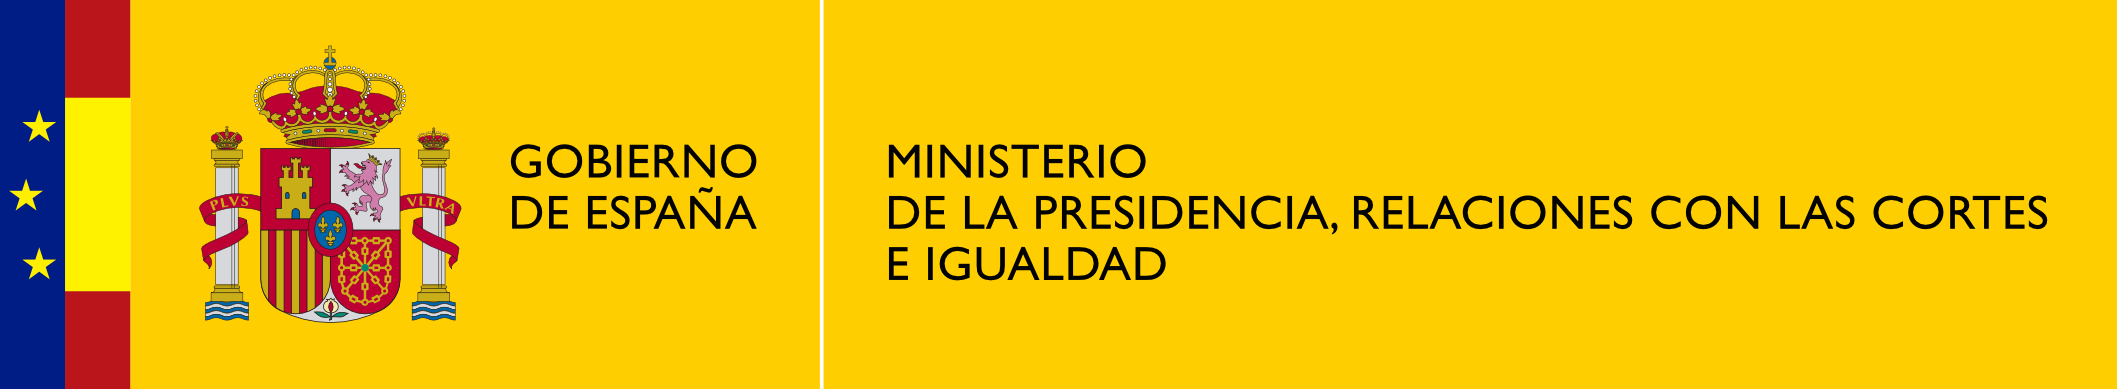 Logo Ministerio Presidencia Relaciones Cortes Igualdad